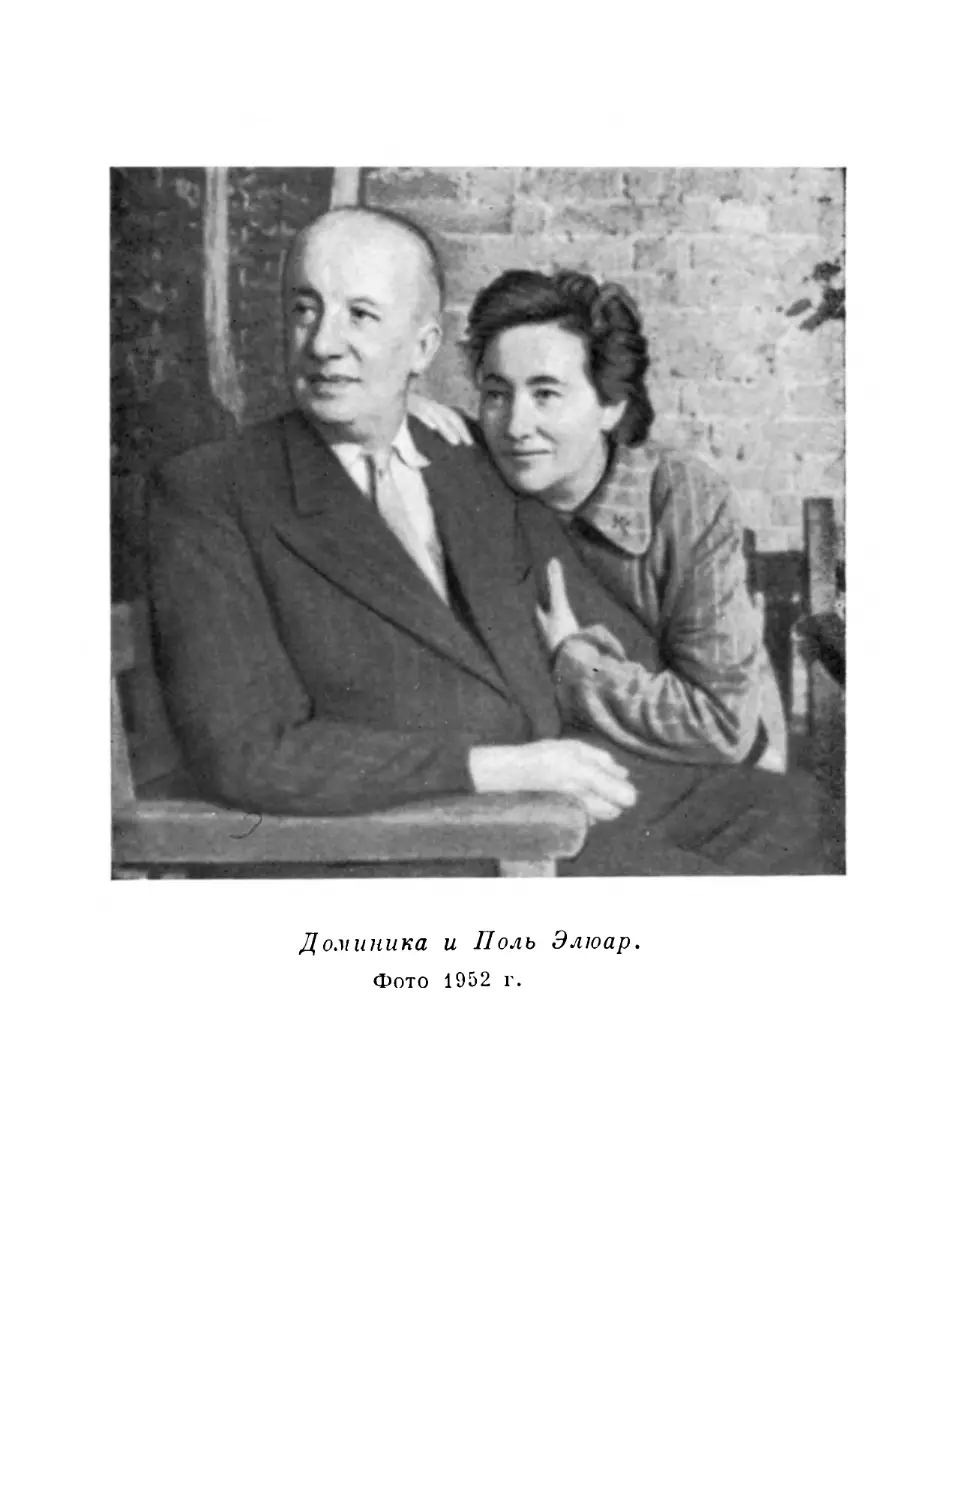 Вклейка. Доминика и Поль Элюар. Фото 1952 г.